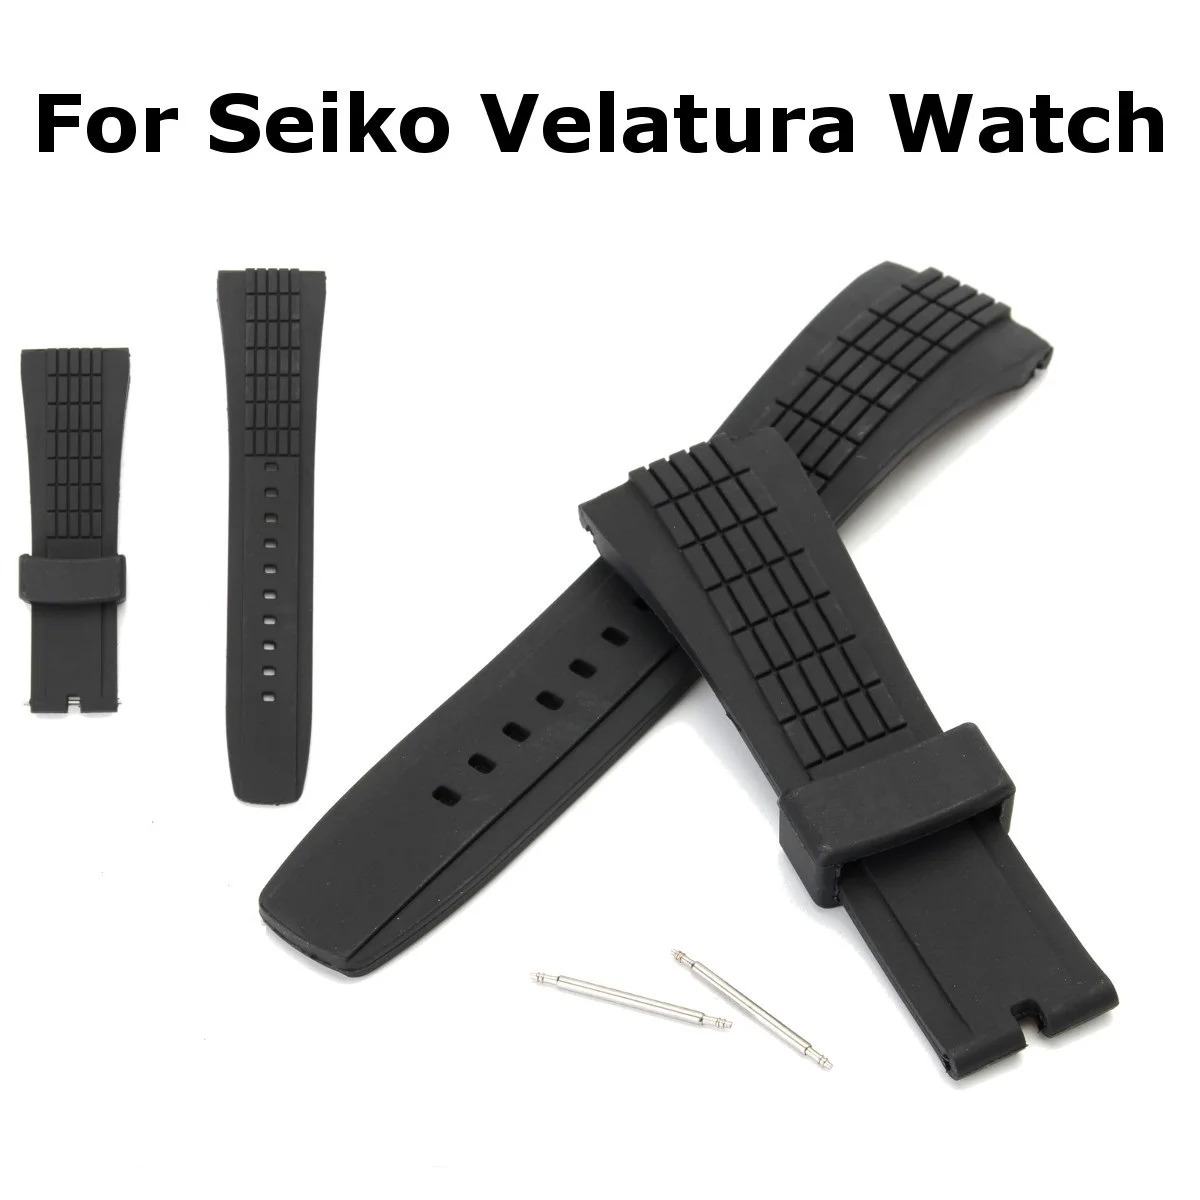 26 мм силиконовый черный ремень для часов Ремешок Для Seiko Velatura часы водонепроницаемые резиновые Сменные специальные Популярные ремешки для часов